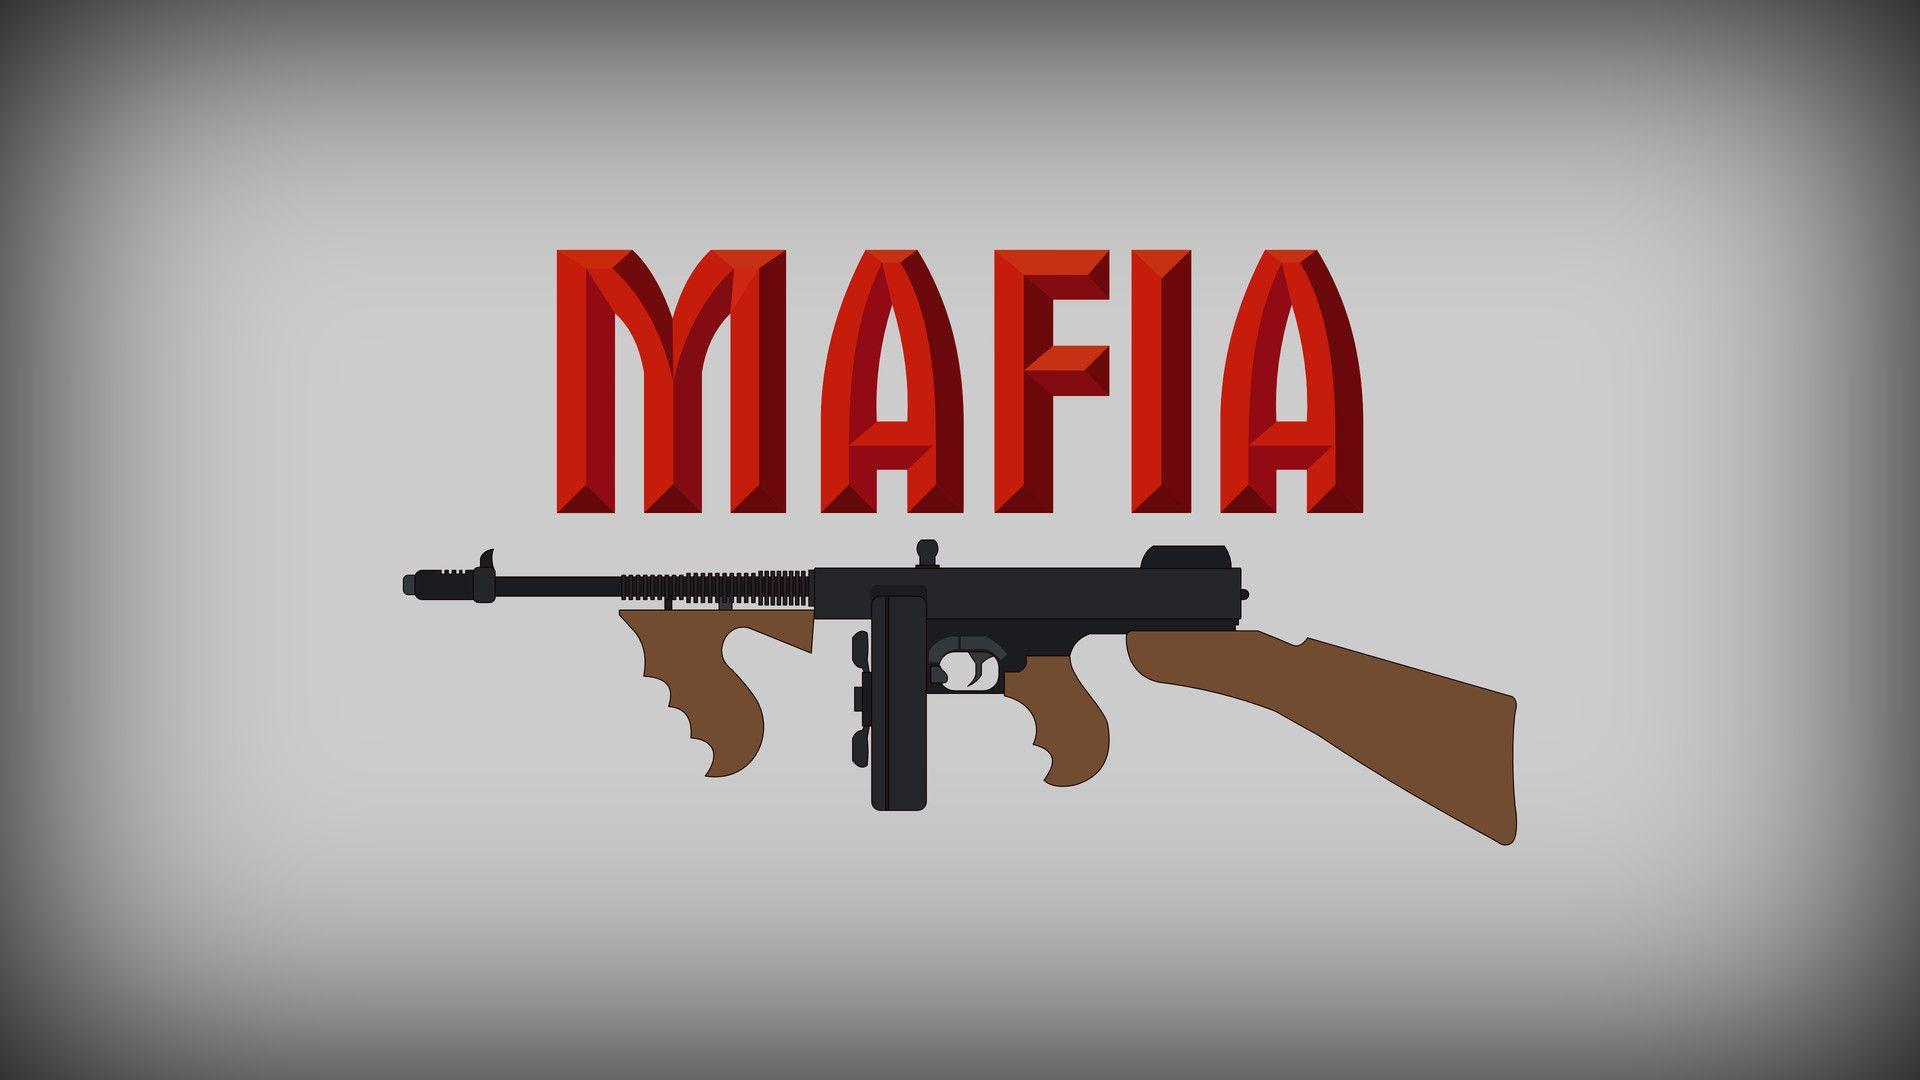 Mafia Wallpaper, Josef Reichelt